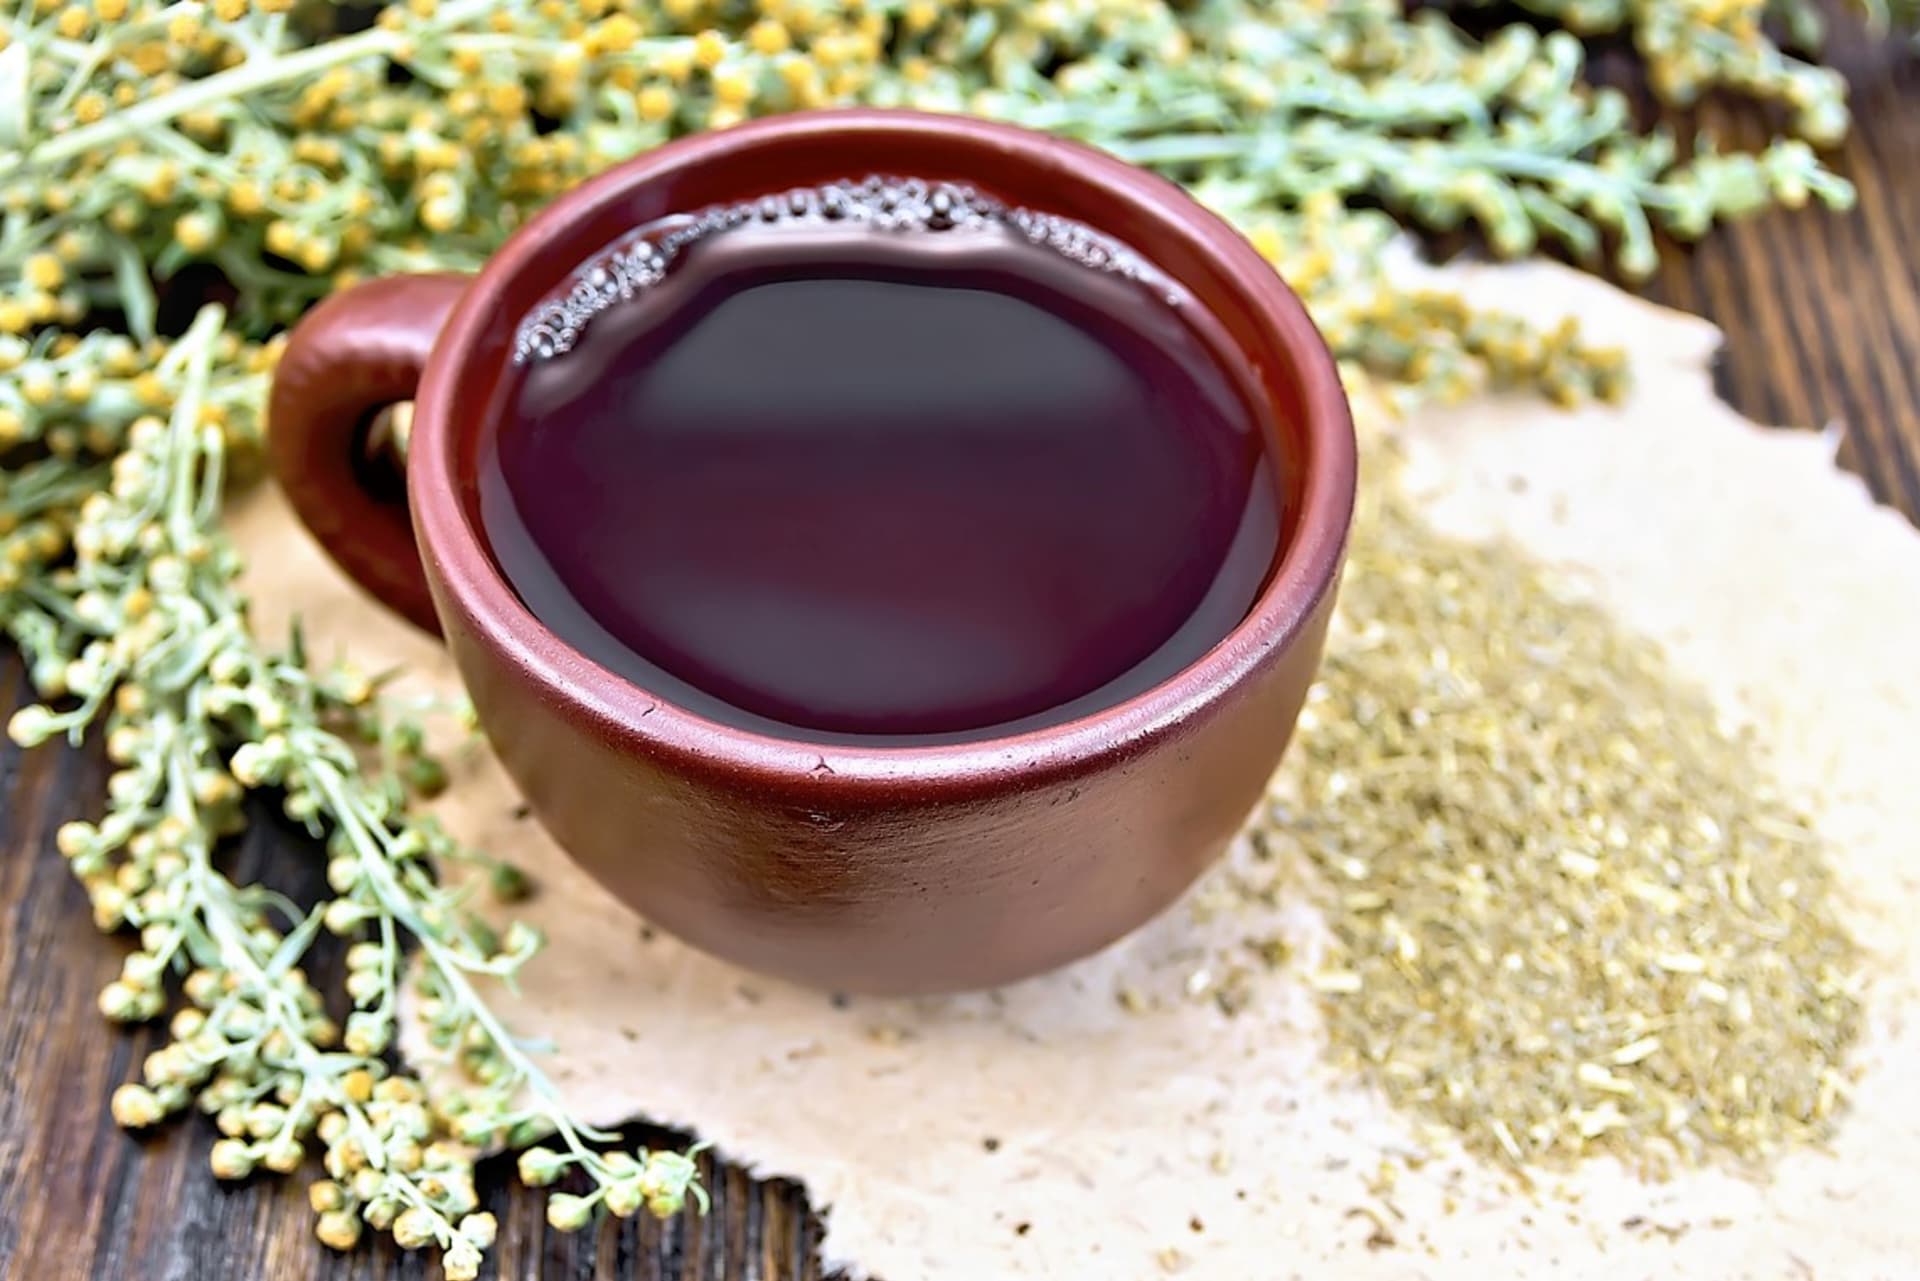 Pelyněk pravý se většinou přidává do bylinných čajových směsí: Na zlepšení trávení s mátou, jalovcem, heřmánkem, majoránkou nebo řepíkem.